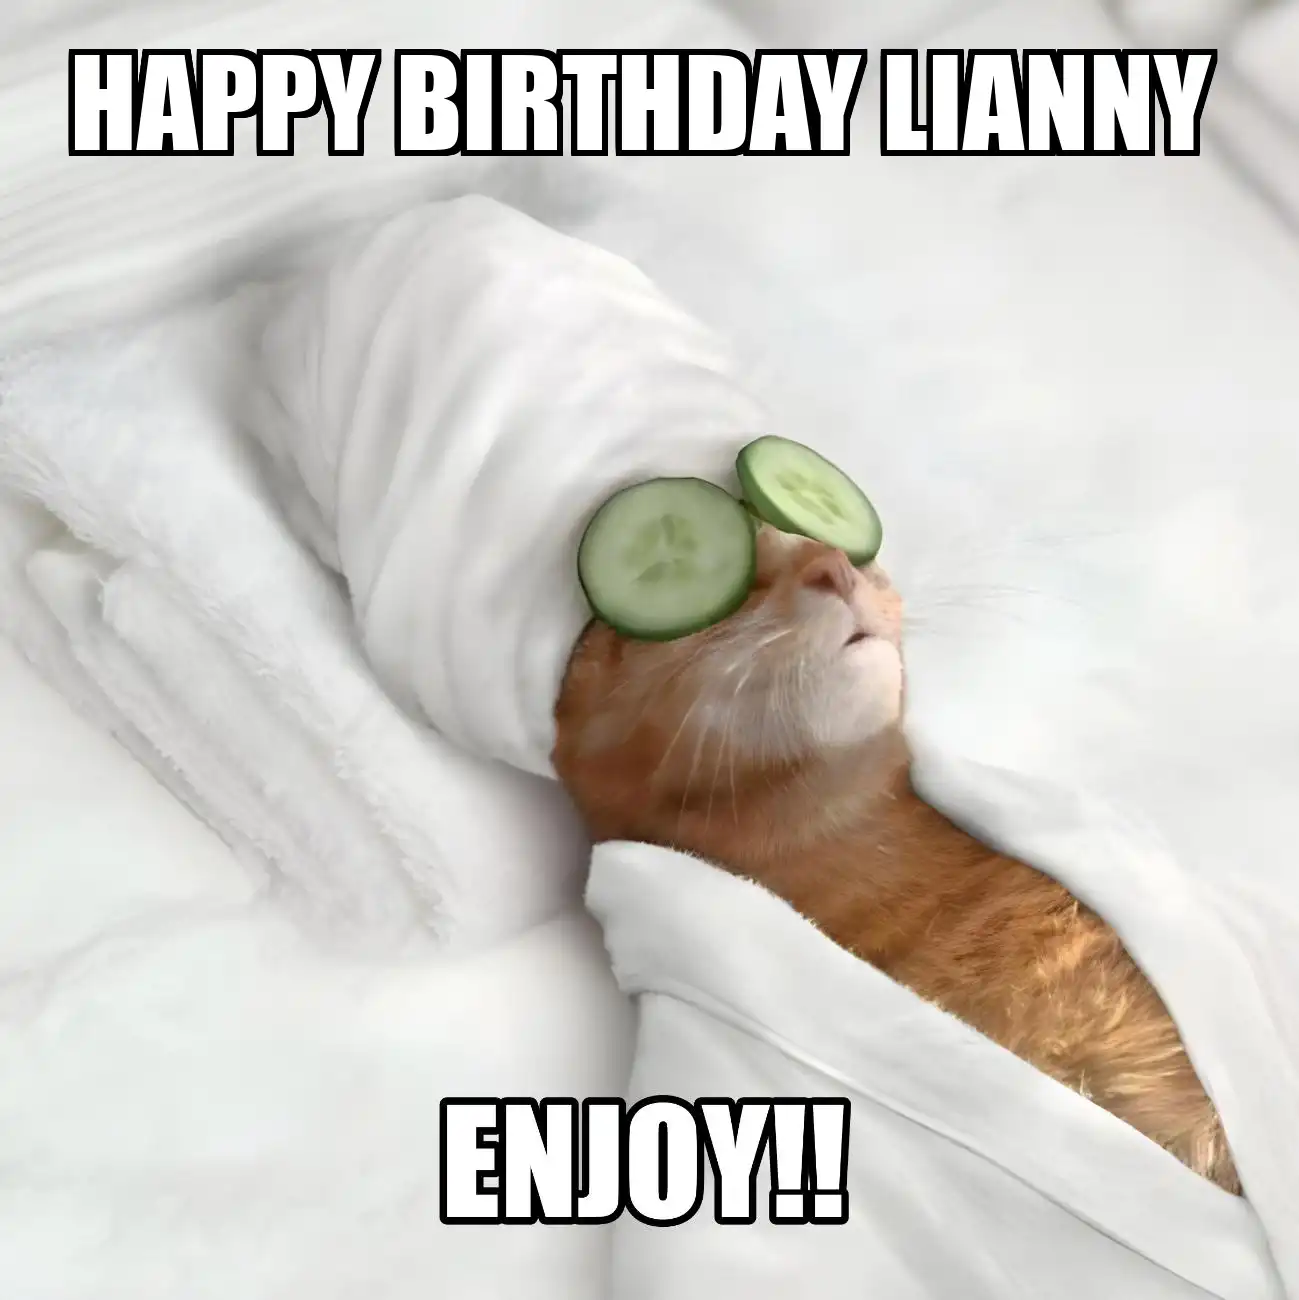 Happy Birthday Lianny Enjoy Cat Meme